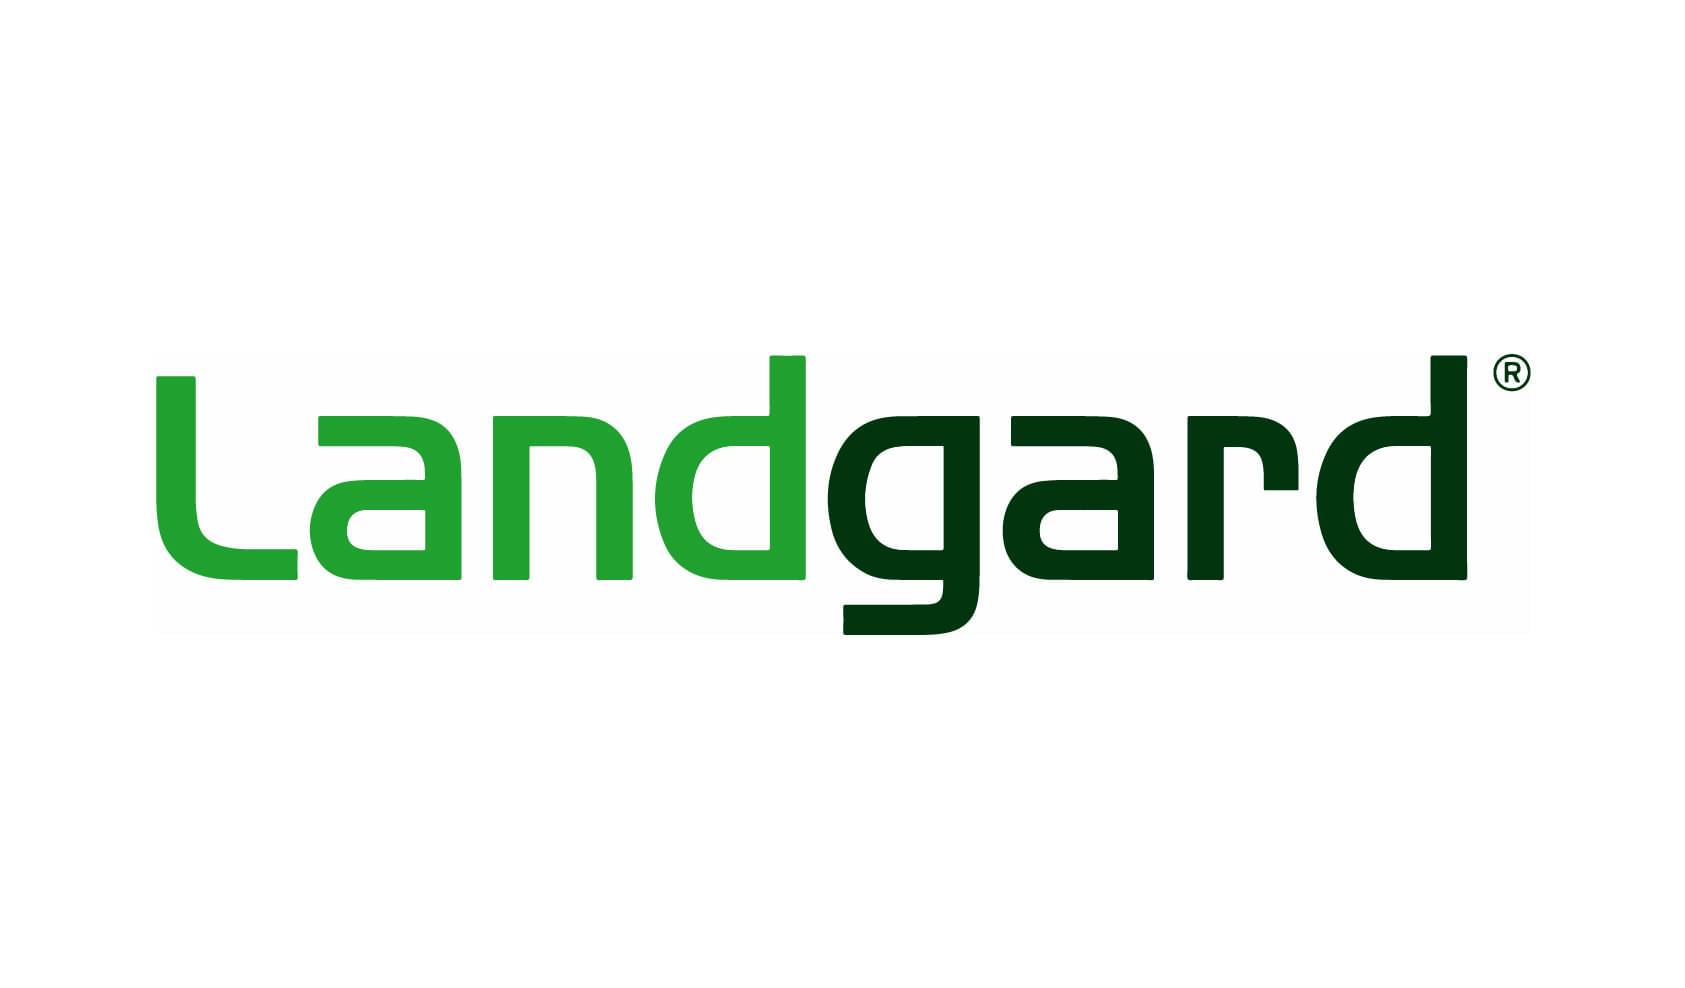 Landgard Logo